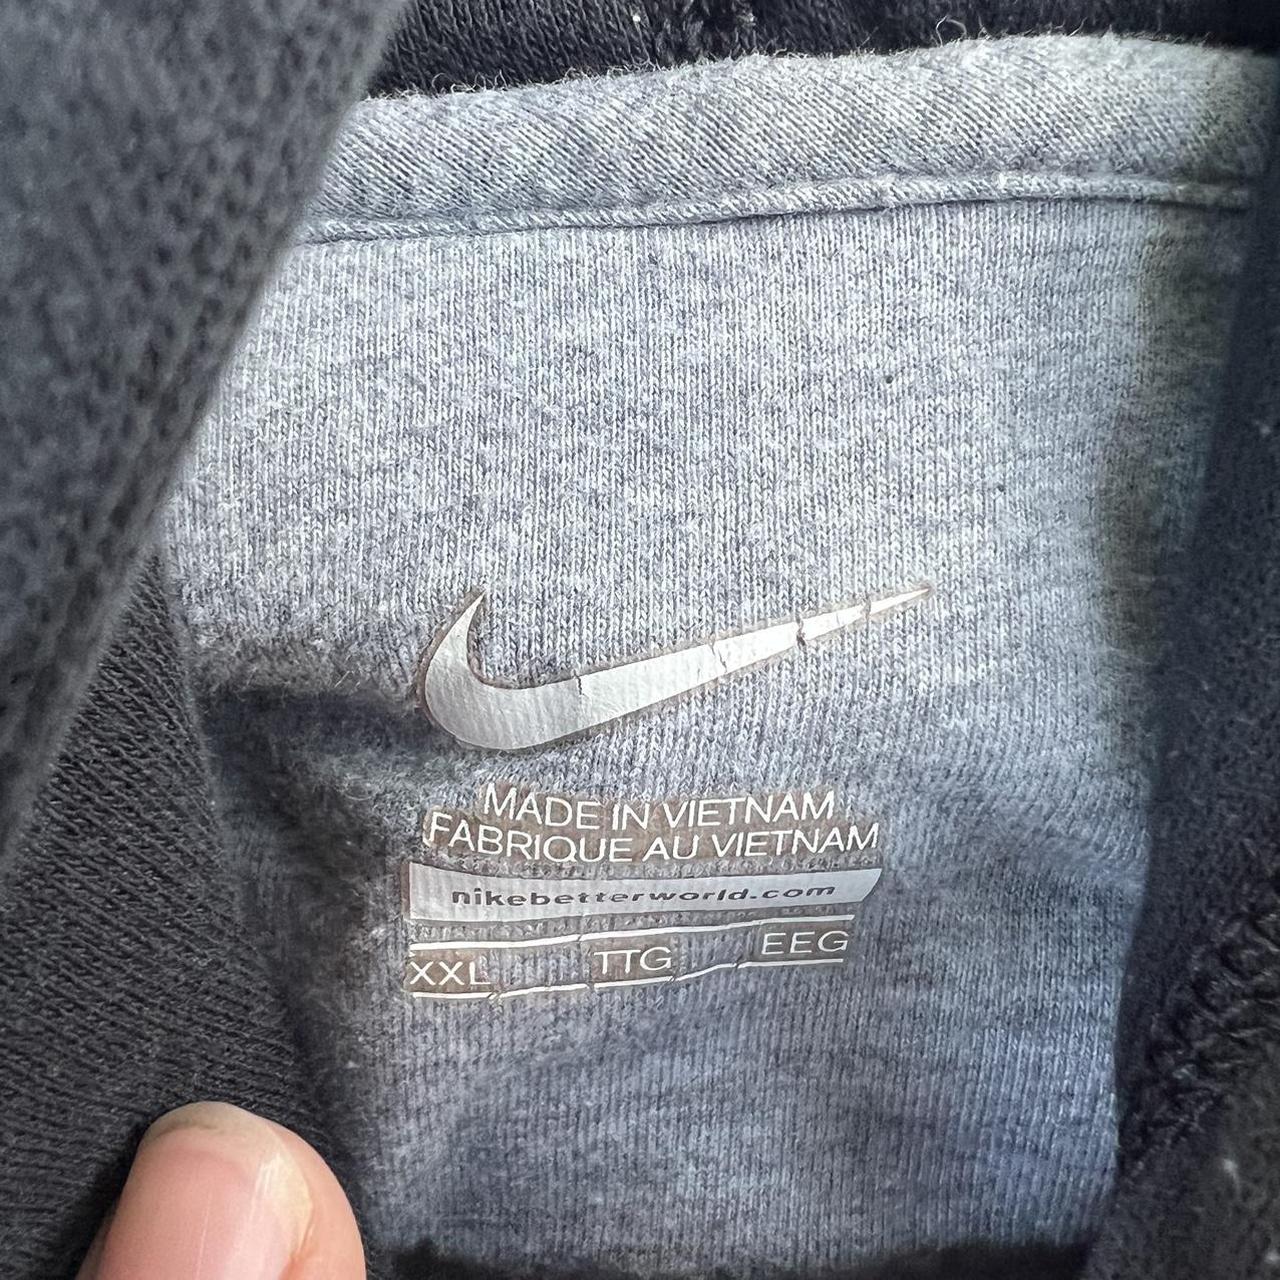 Vintage Nike swoosh hoodie in dark gray/black. No... - Depop